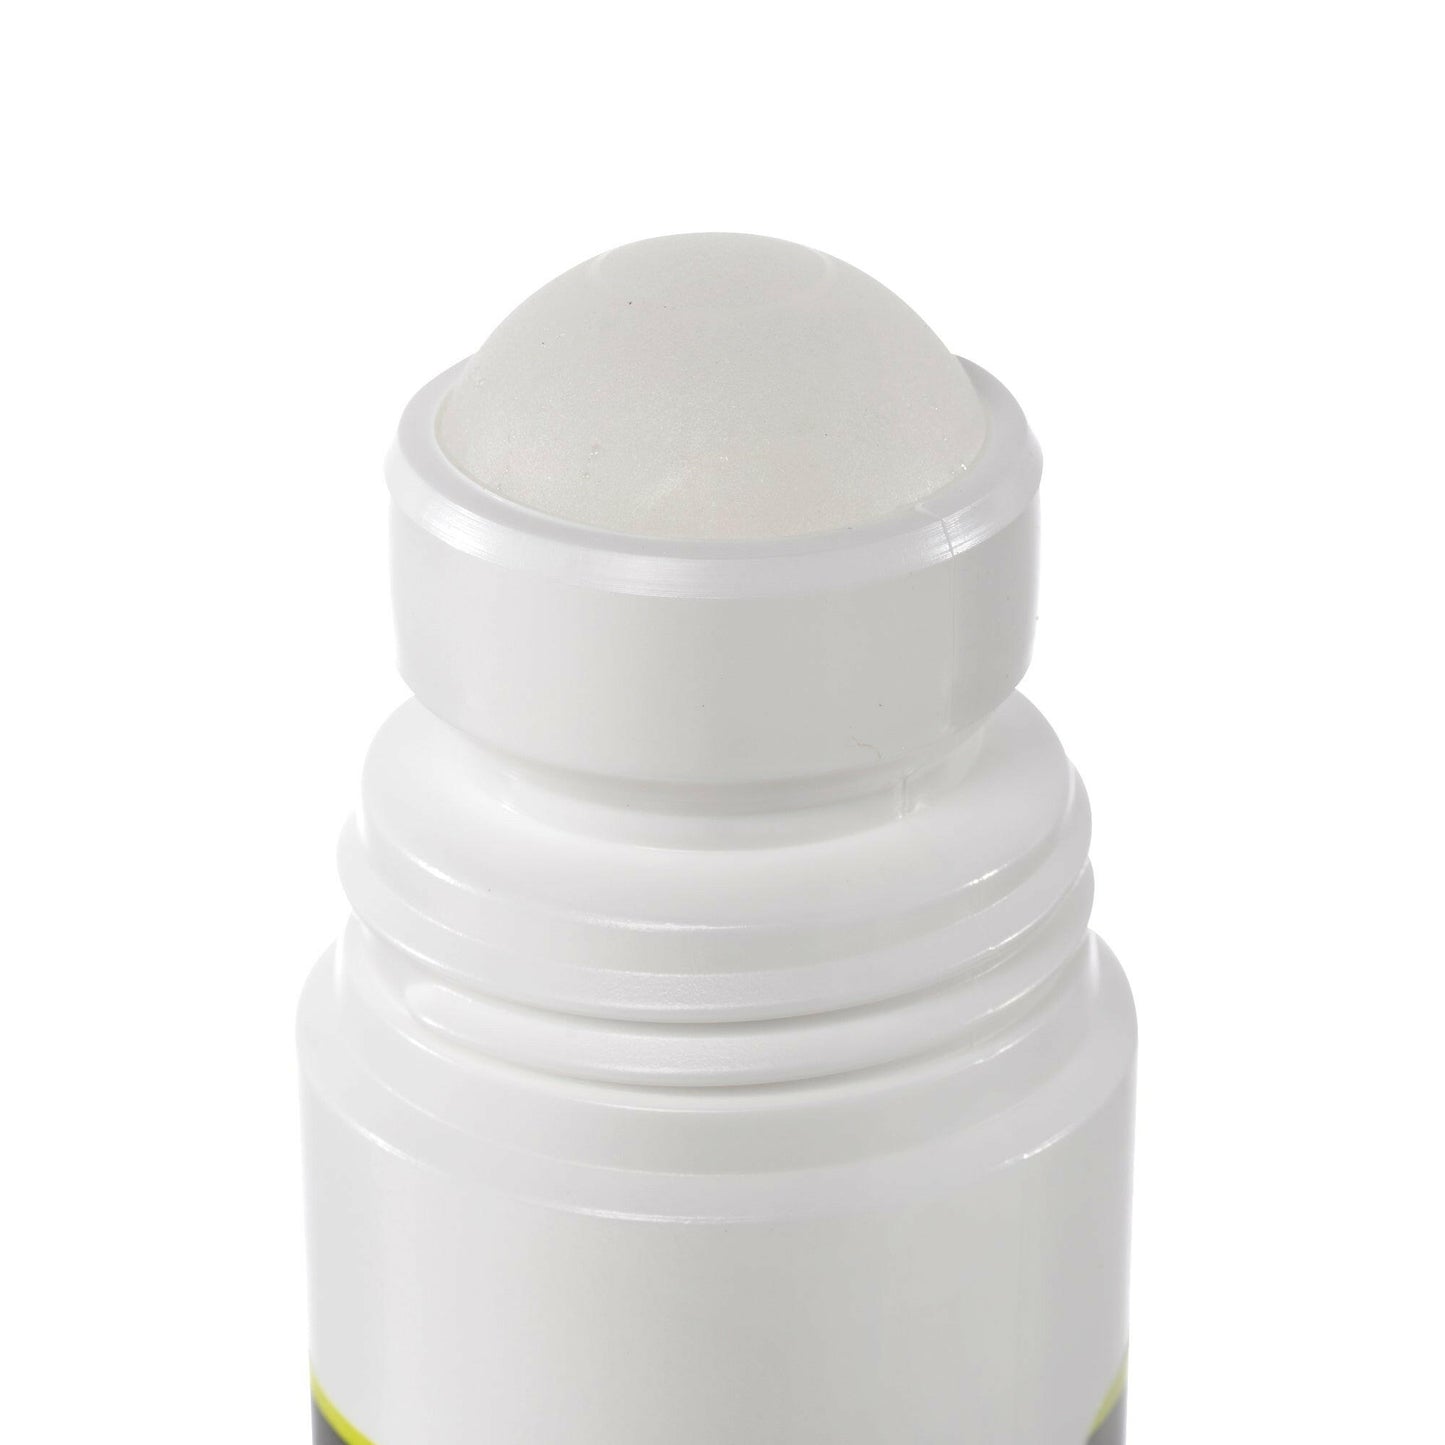 Dimethyl Sulfoxide (DMSO) 3 oz Roll-on 99.995% Low Odor Pharmaceutical Grade in BPA-Free Plastic Bottle